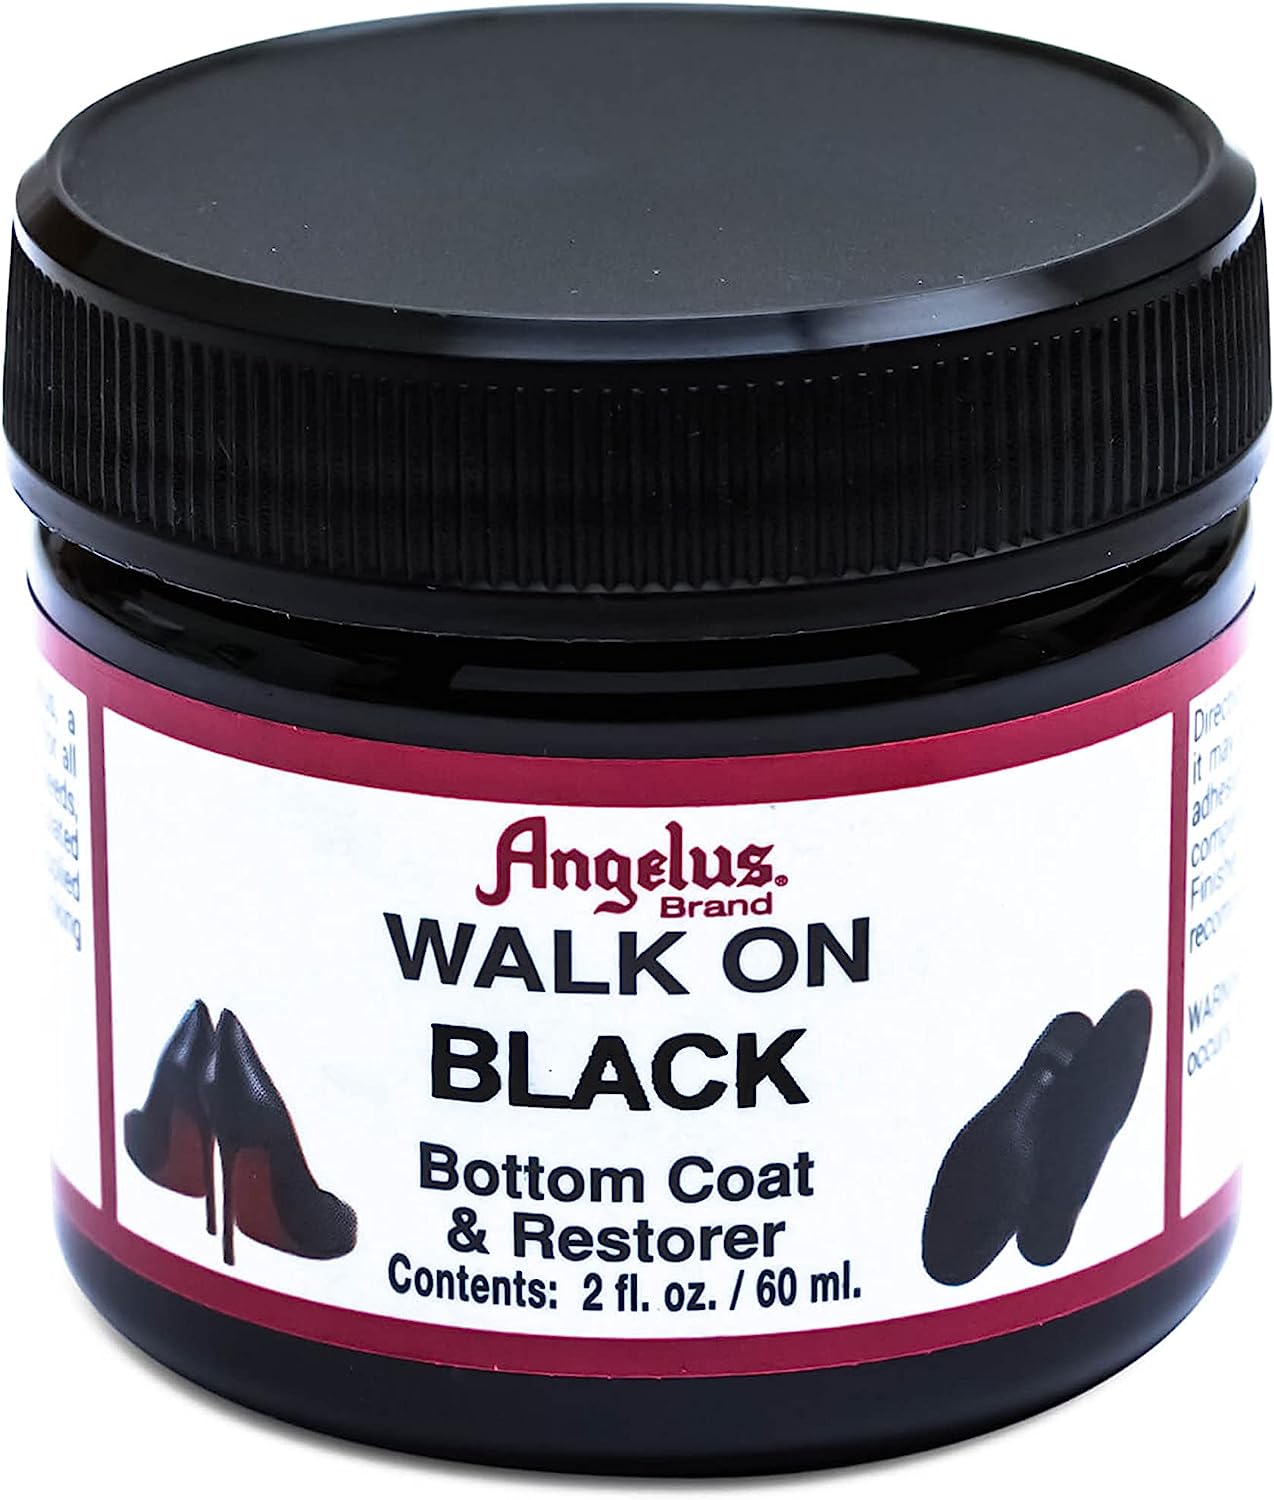 Angelus Walk on Black Paint Restorer - Restores and [...]